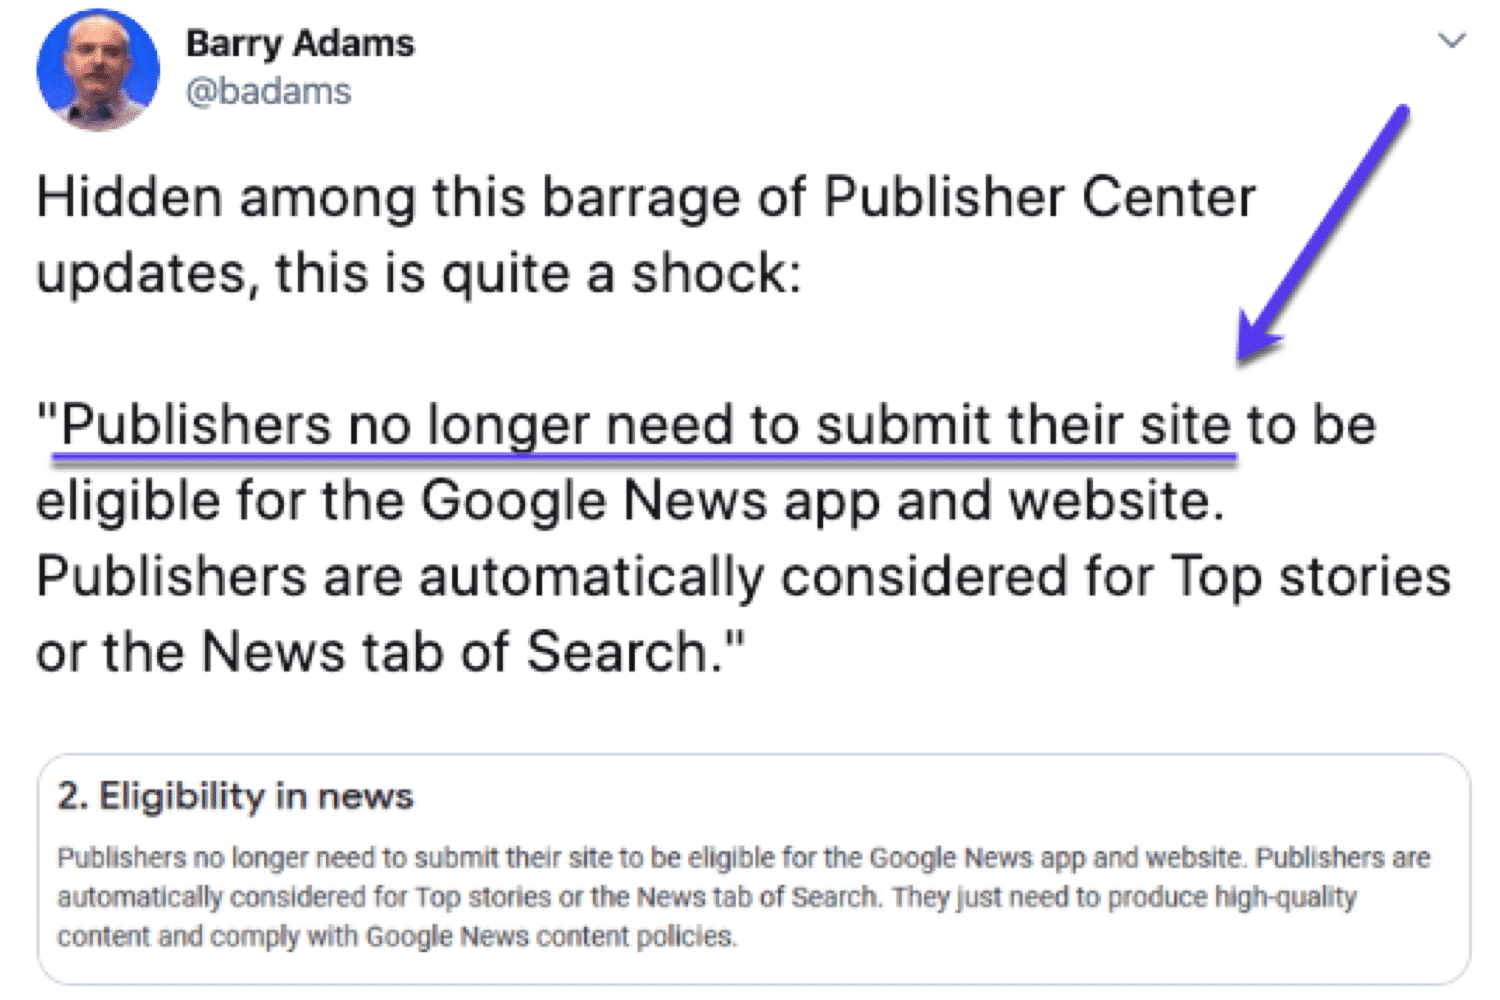 Barry Adams descobriu que os editores não precisam enviar seus sites